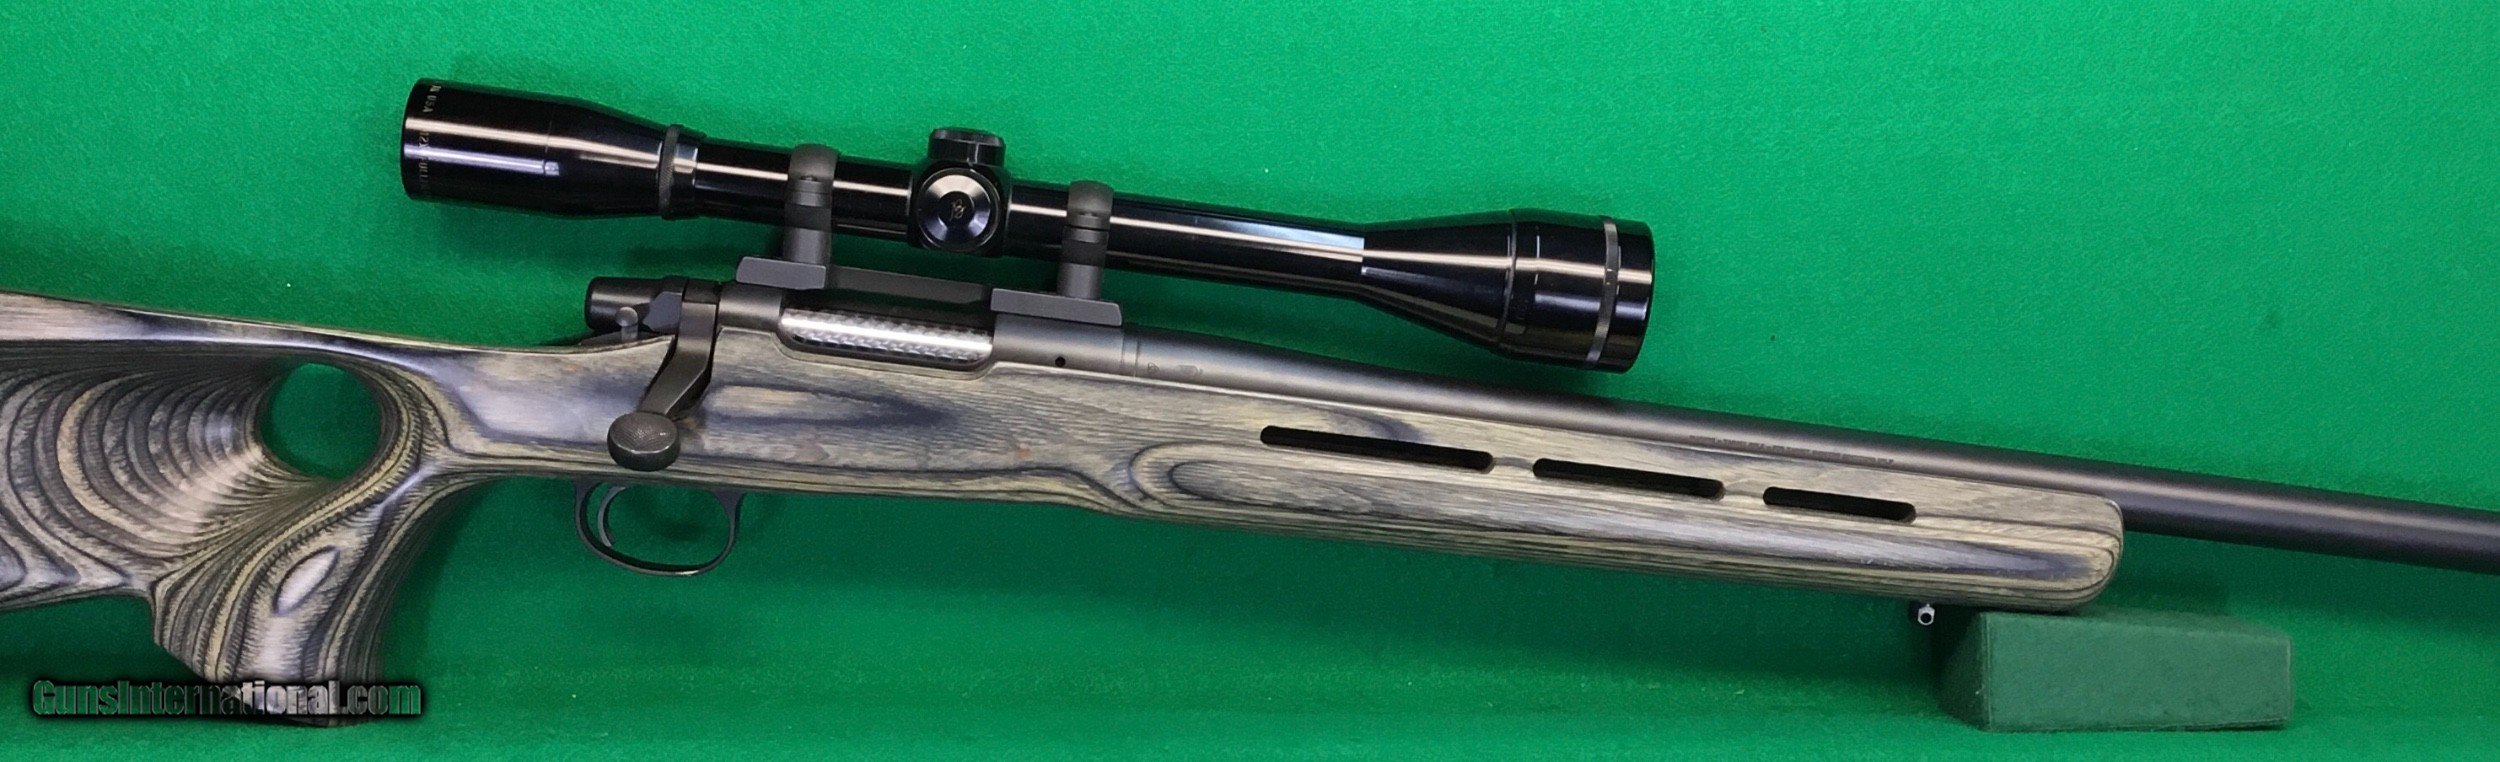 Thumbhole Stock White Laminate - Ithaca Gun Co.